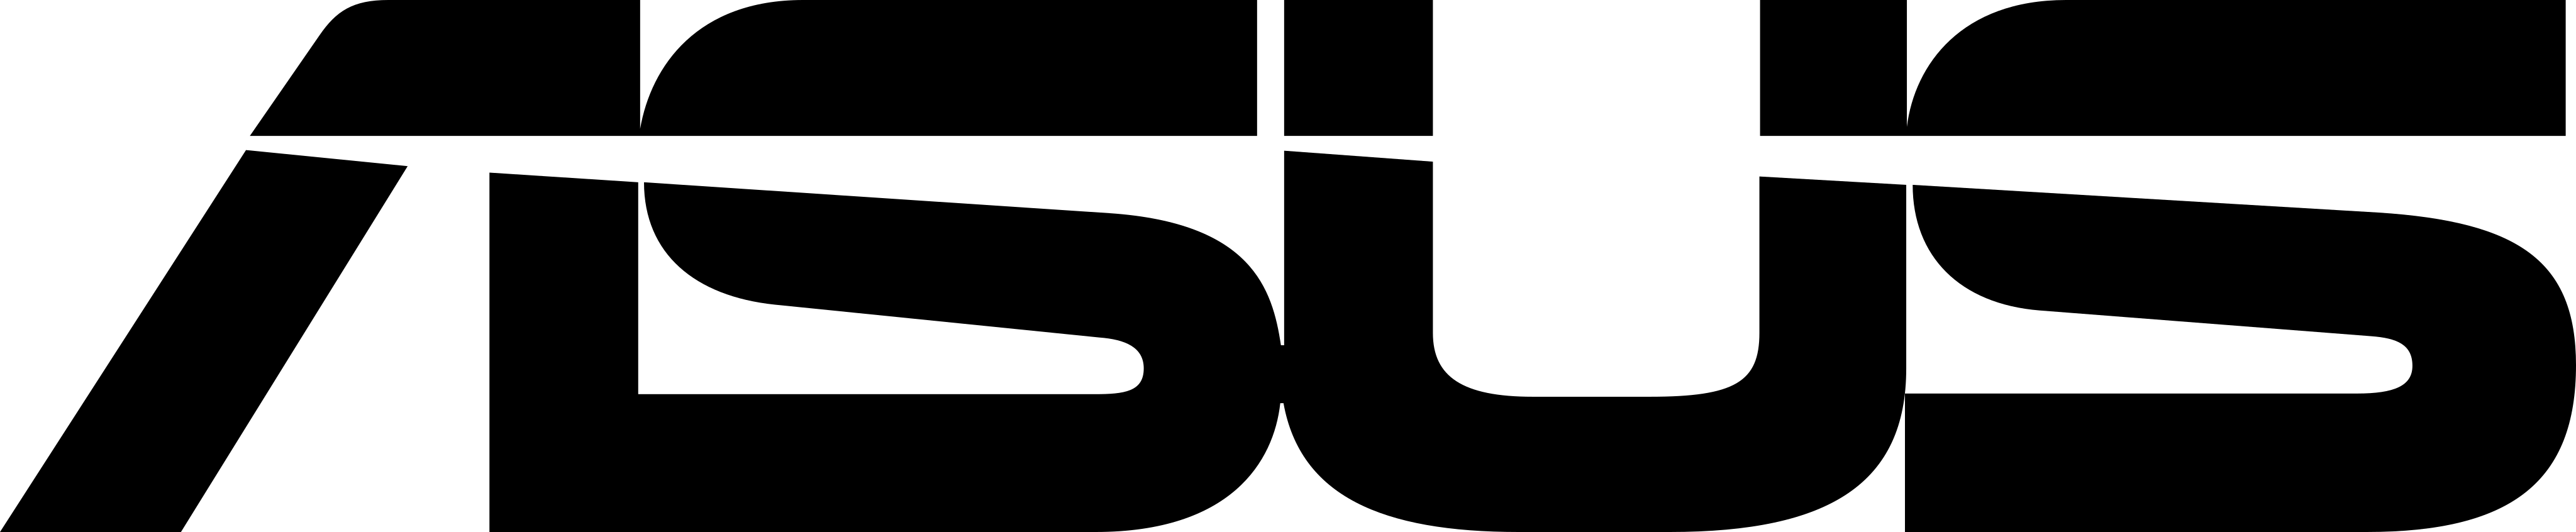 Image of Asus logo